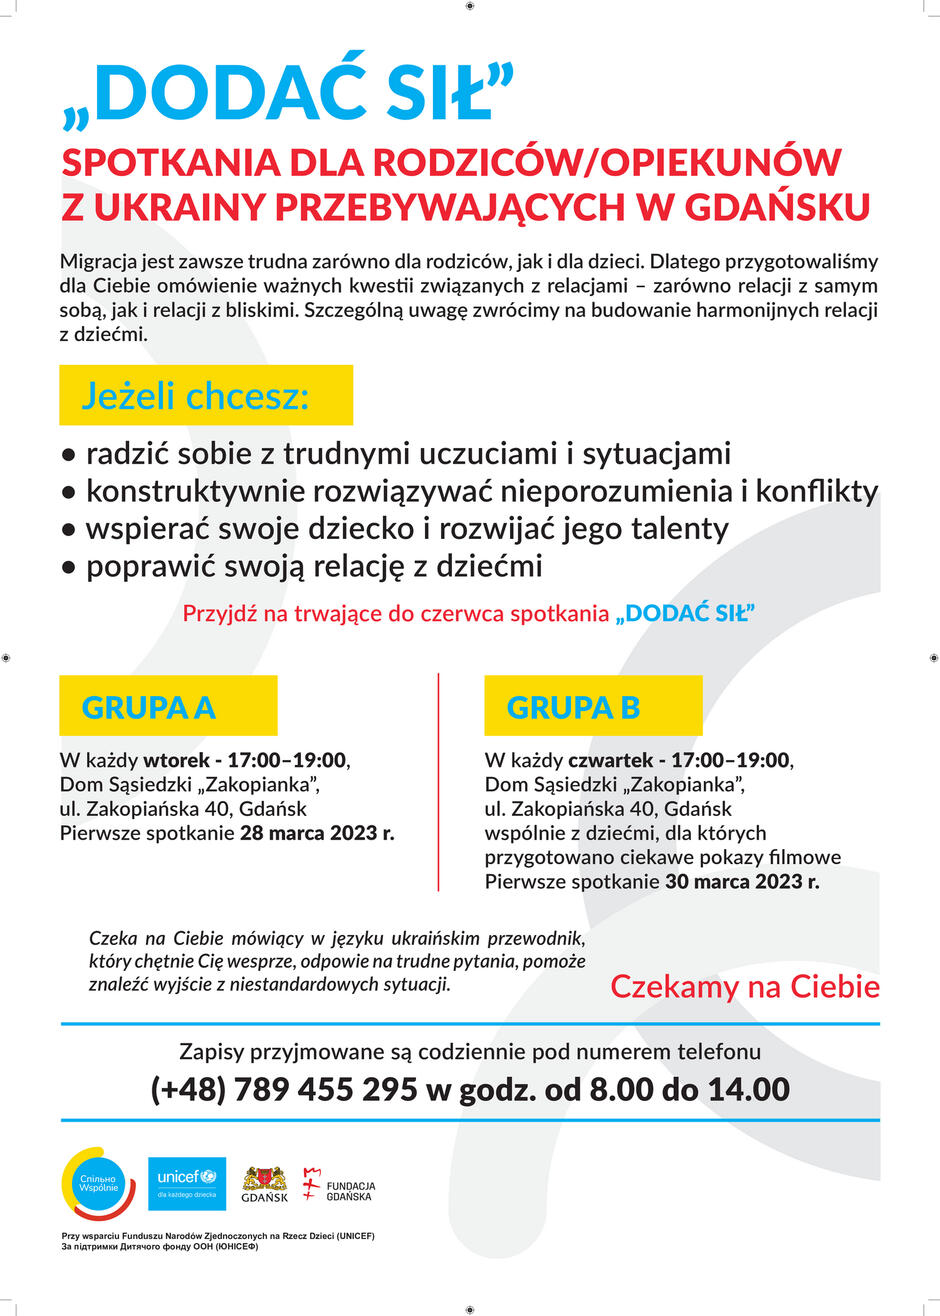 Plakat informacyjny spotkań "Dodać sił" - wersja po polsku